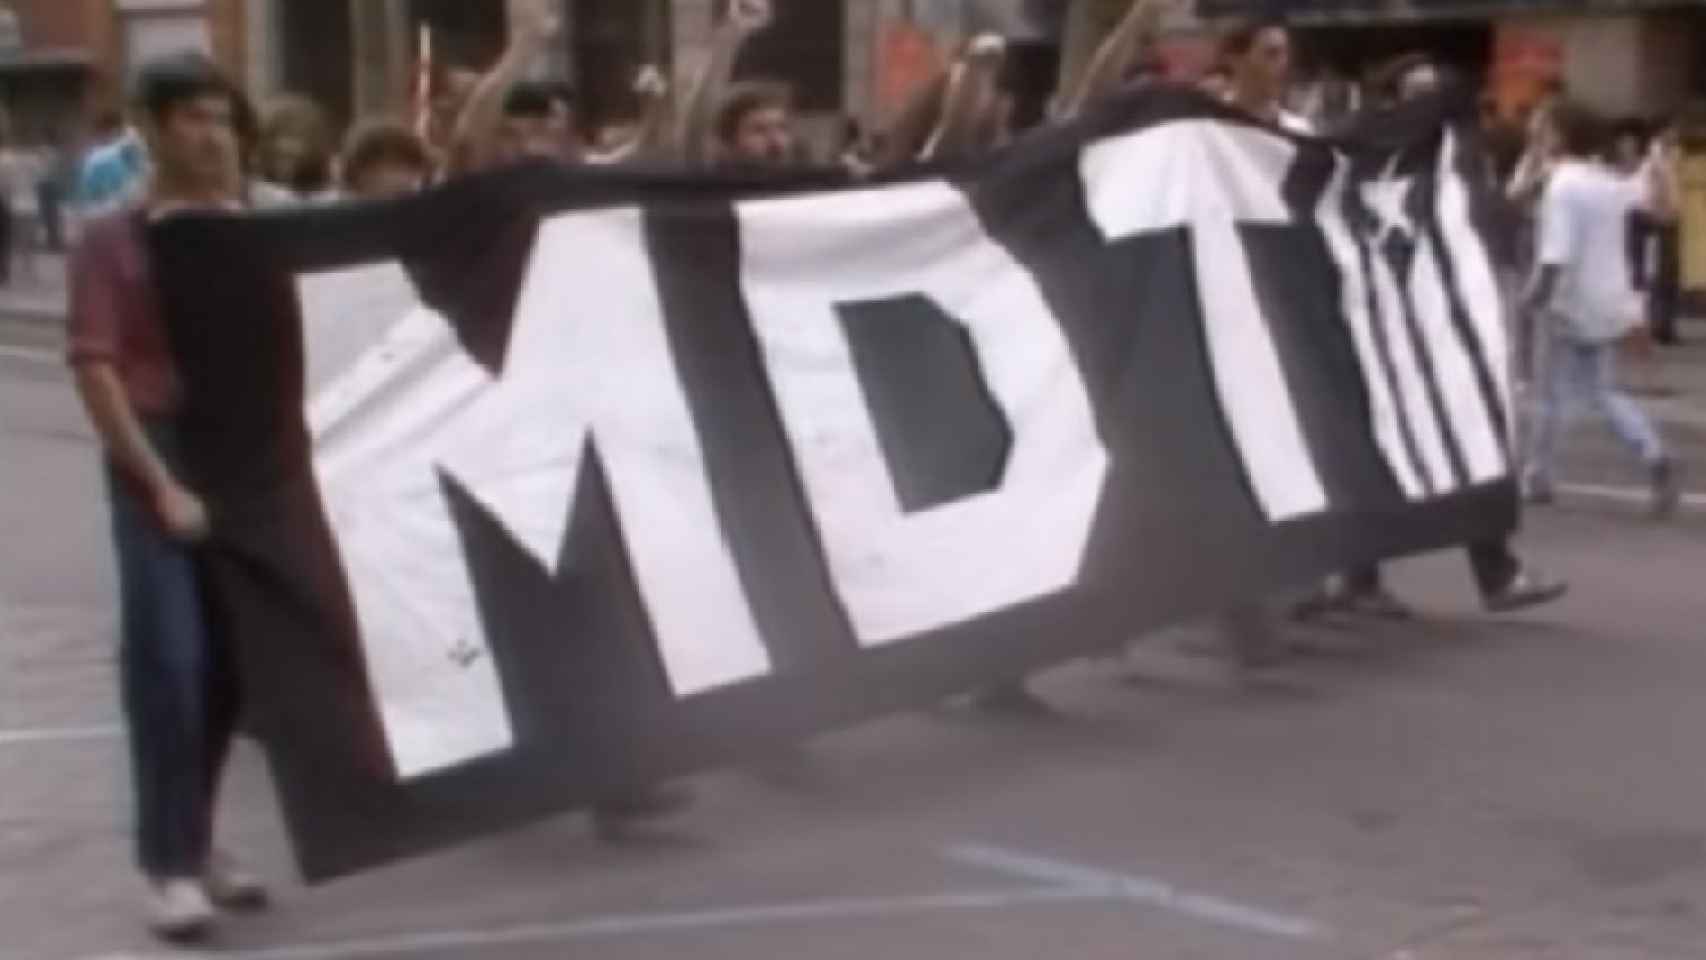 El MDT tenía que convertirse en el vertebrador político del independentismo radical